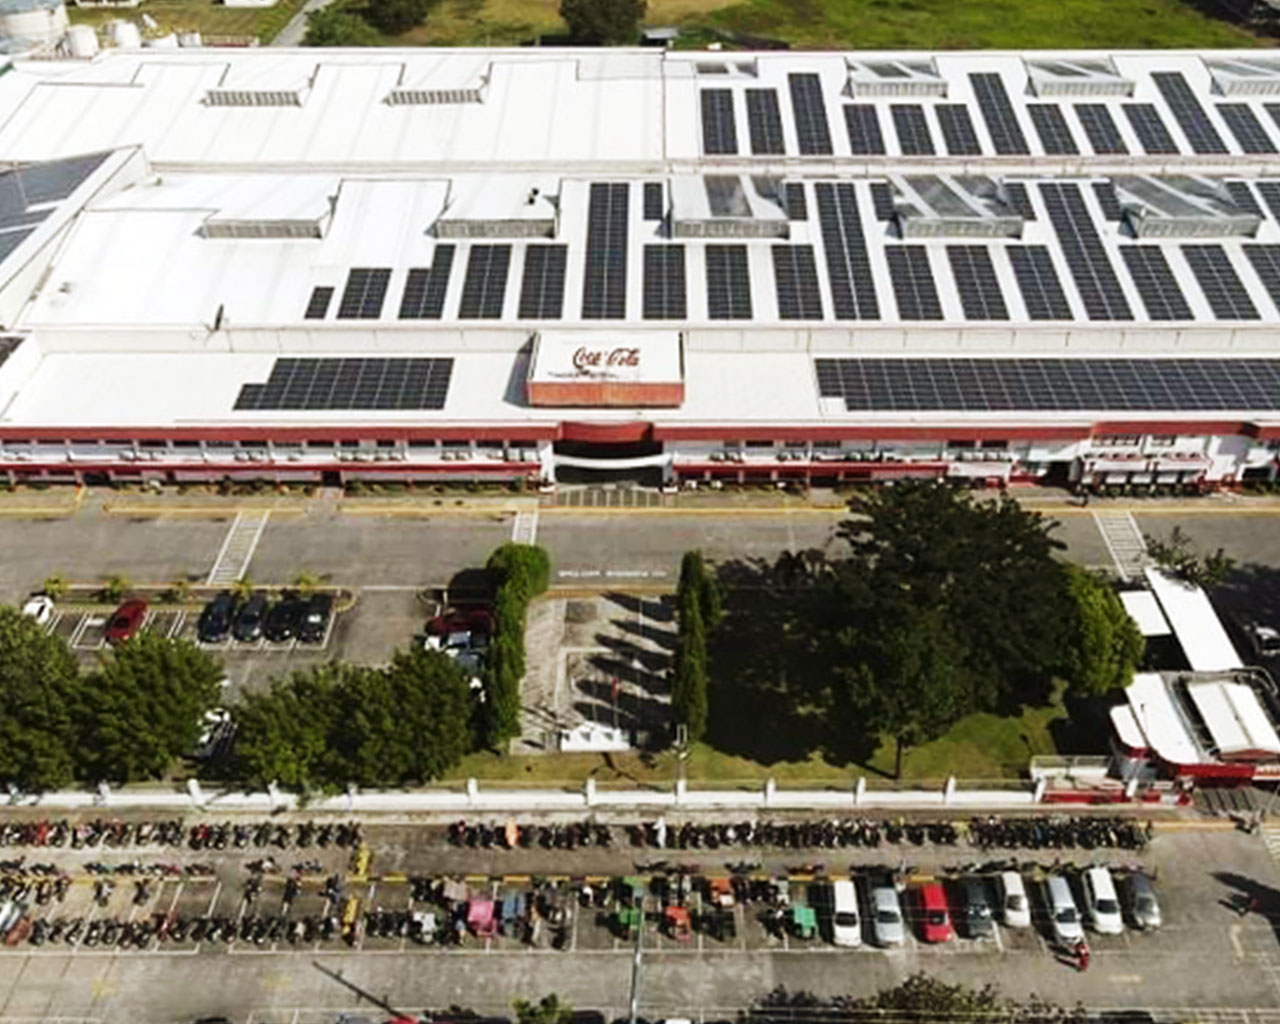 Aerial view of a Coca-Cola distribution center